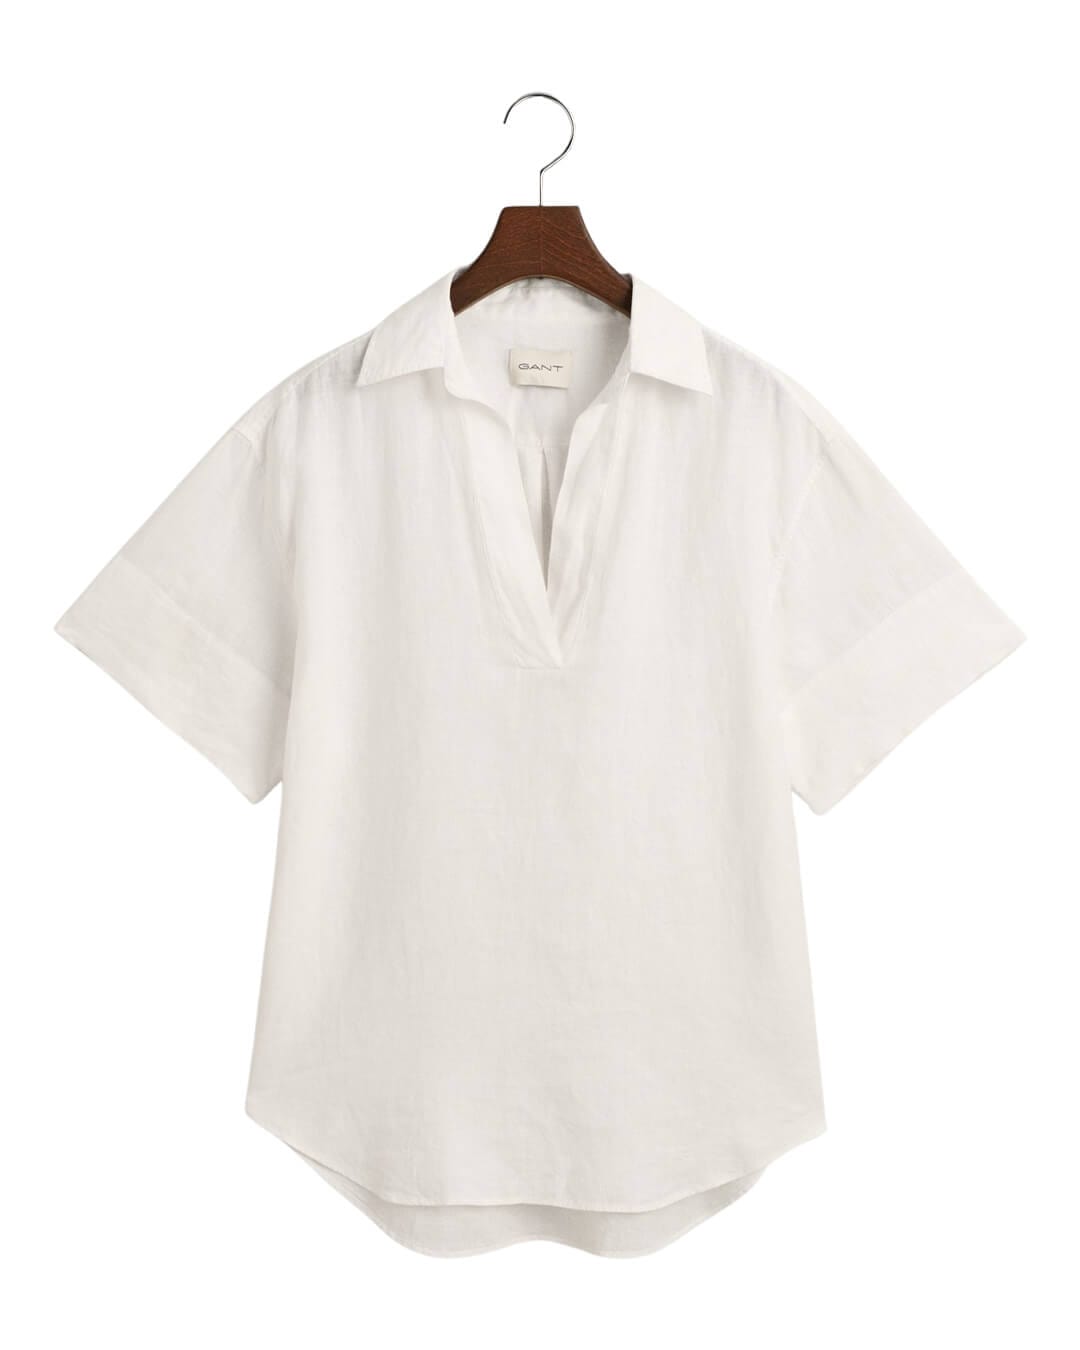 Gant Shirts Gant White Relaxed Linen Popover Shirt